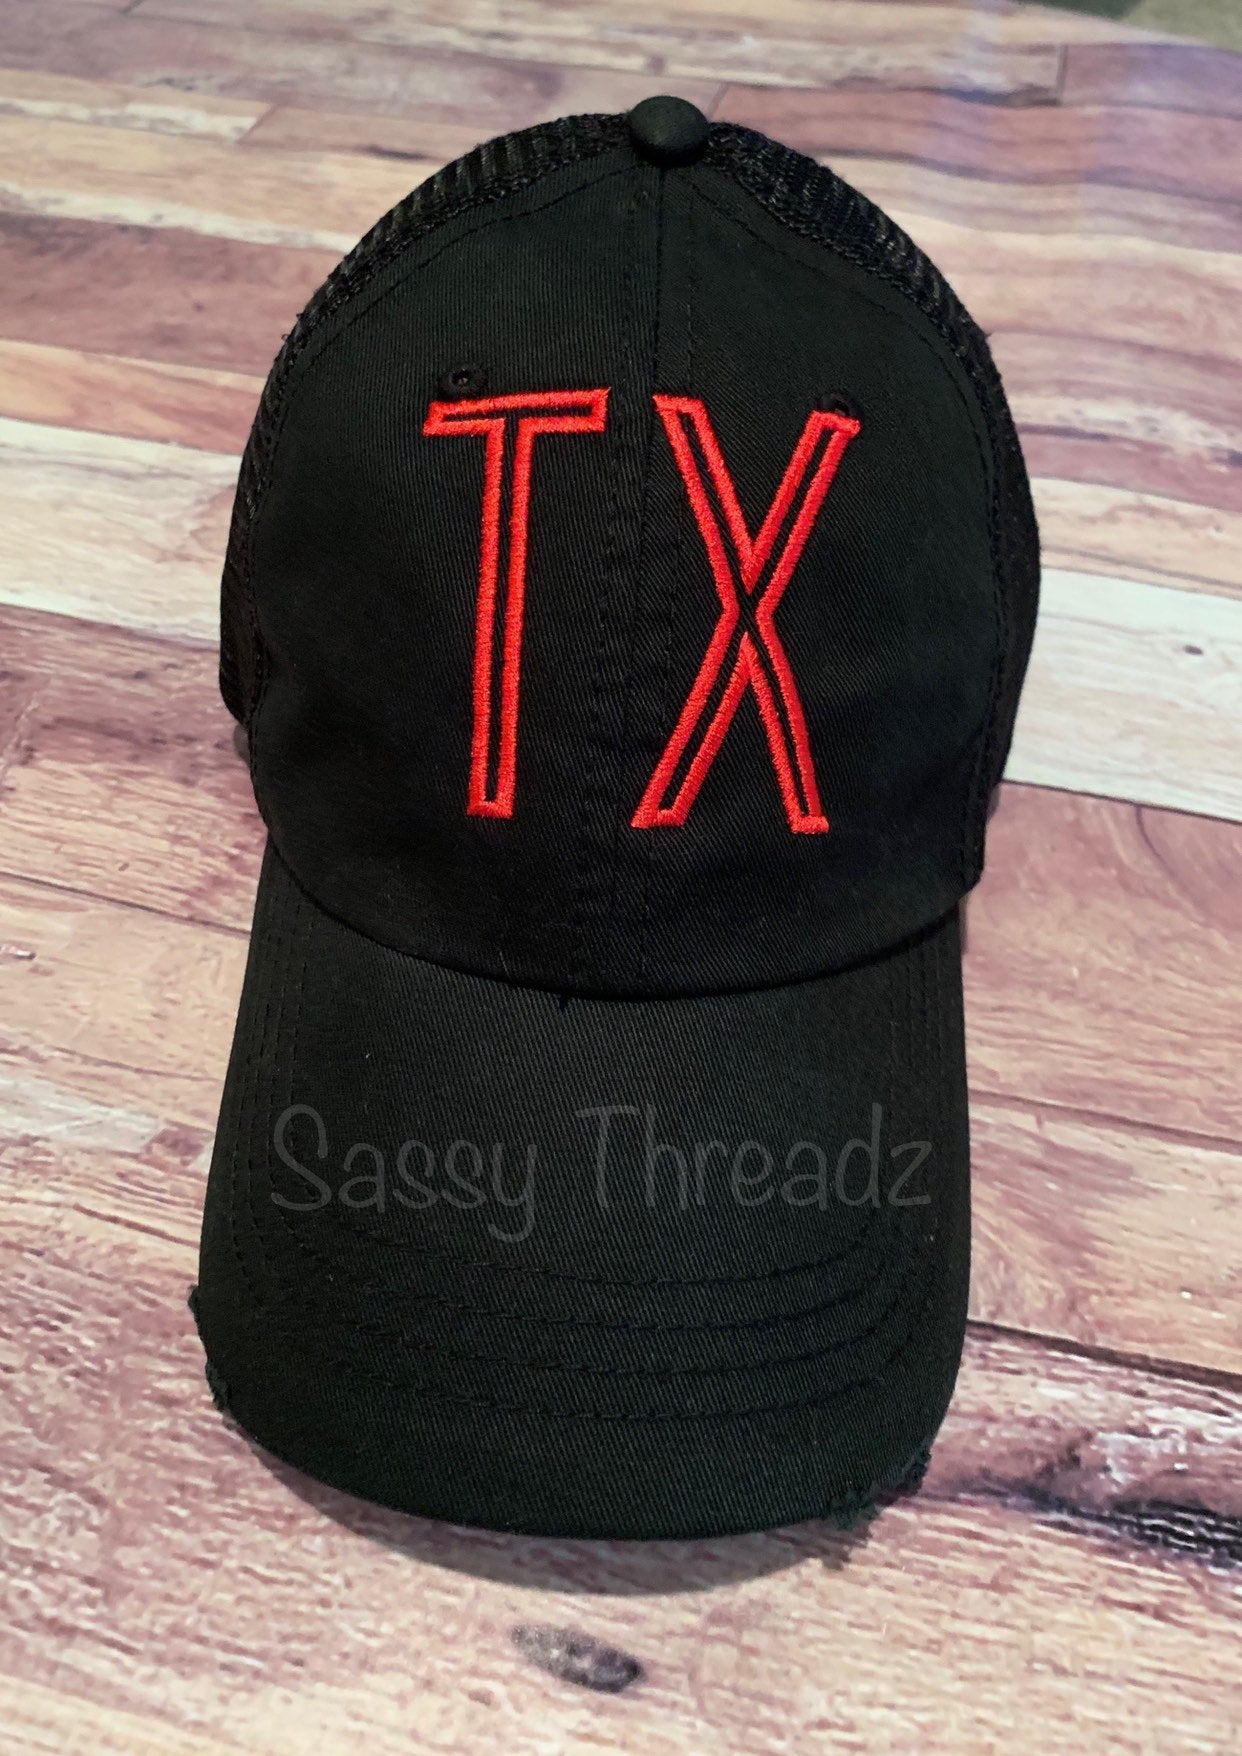 TX Texas Embroidered Trucker Hat - Sassy Threadz